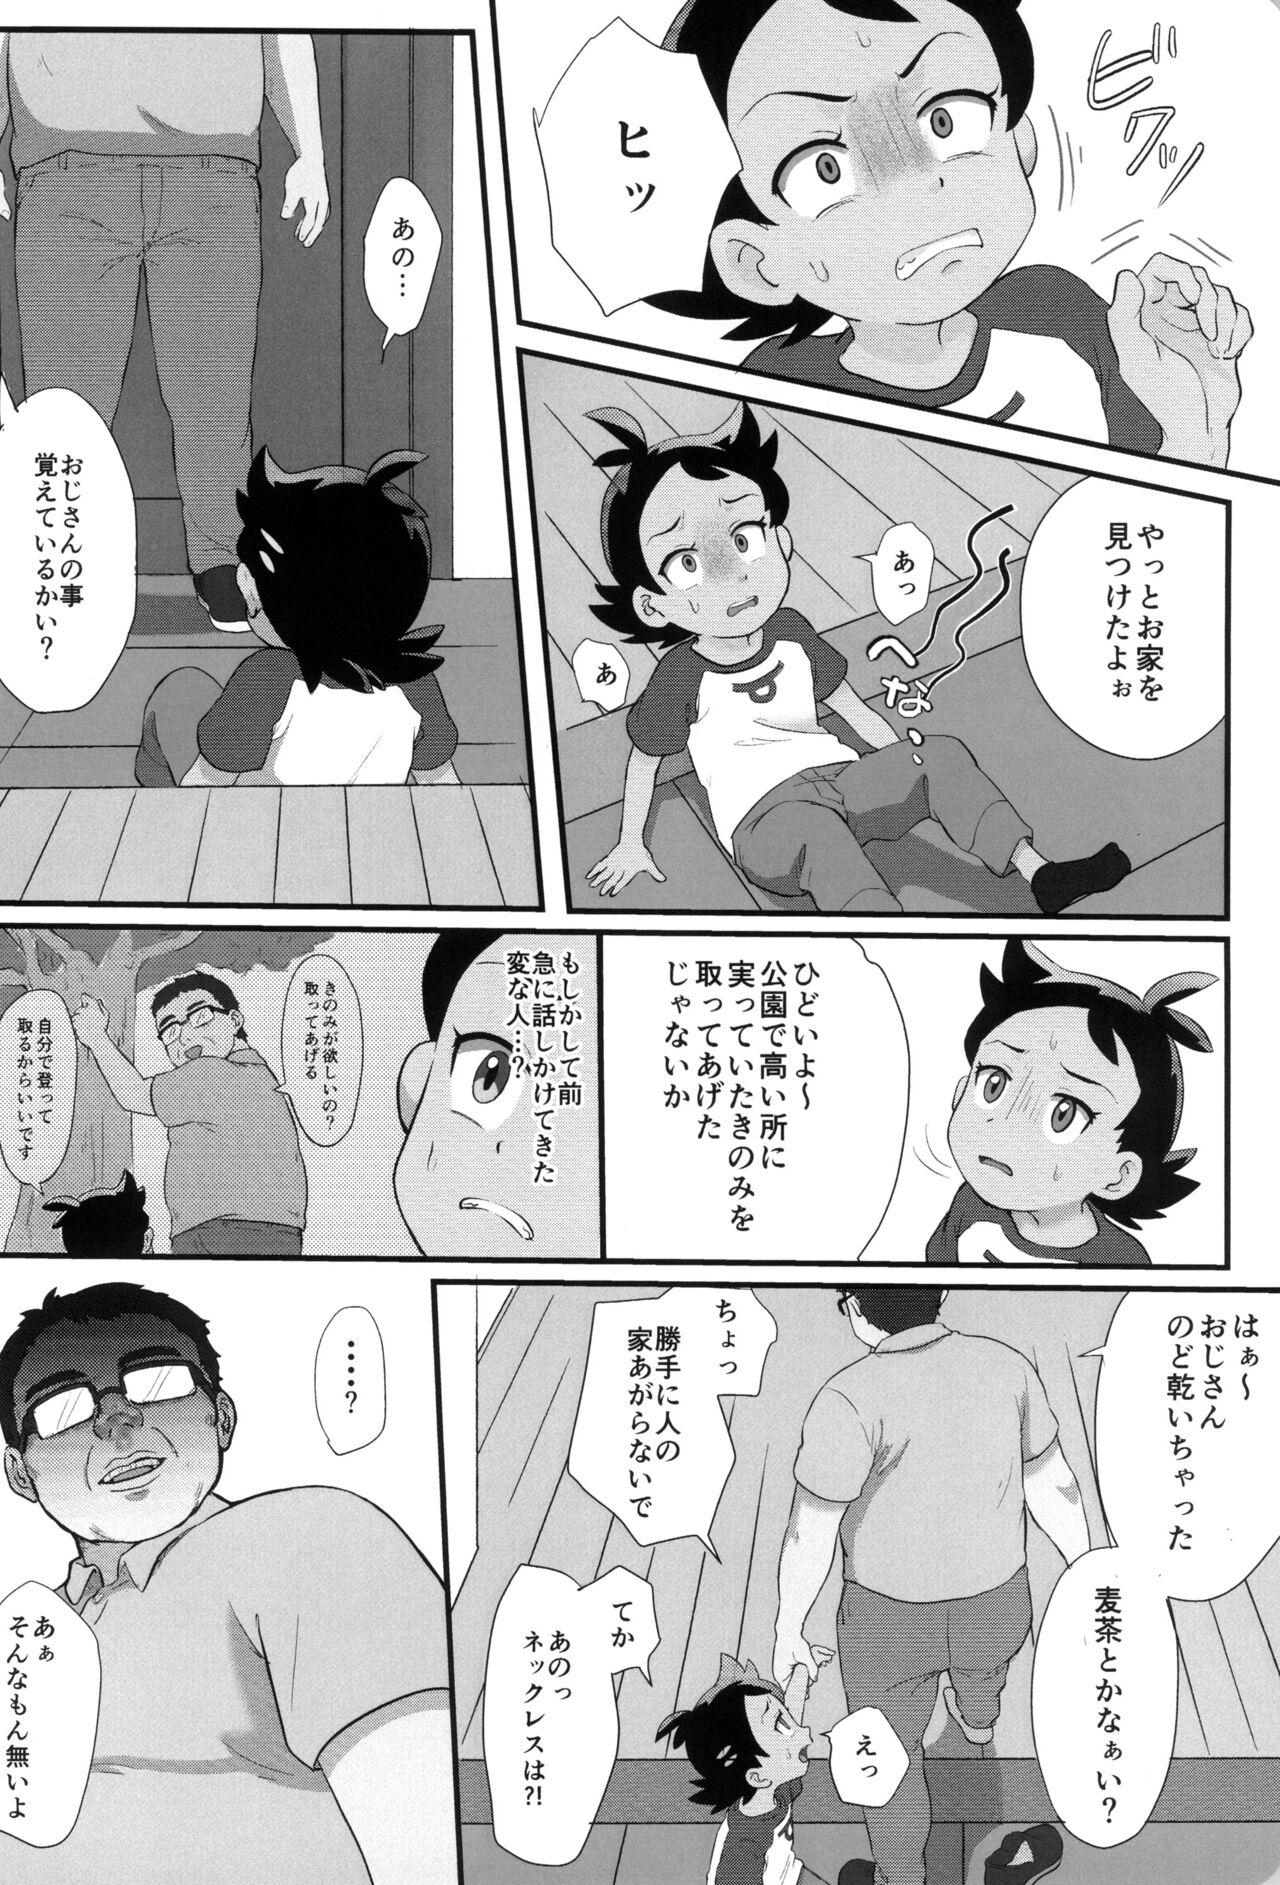 Porno 18 Banabana ga inai no wa danefusshi - Pokemon | pocket monsters Peitos - Page 10